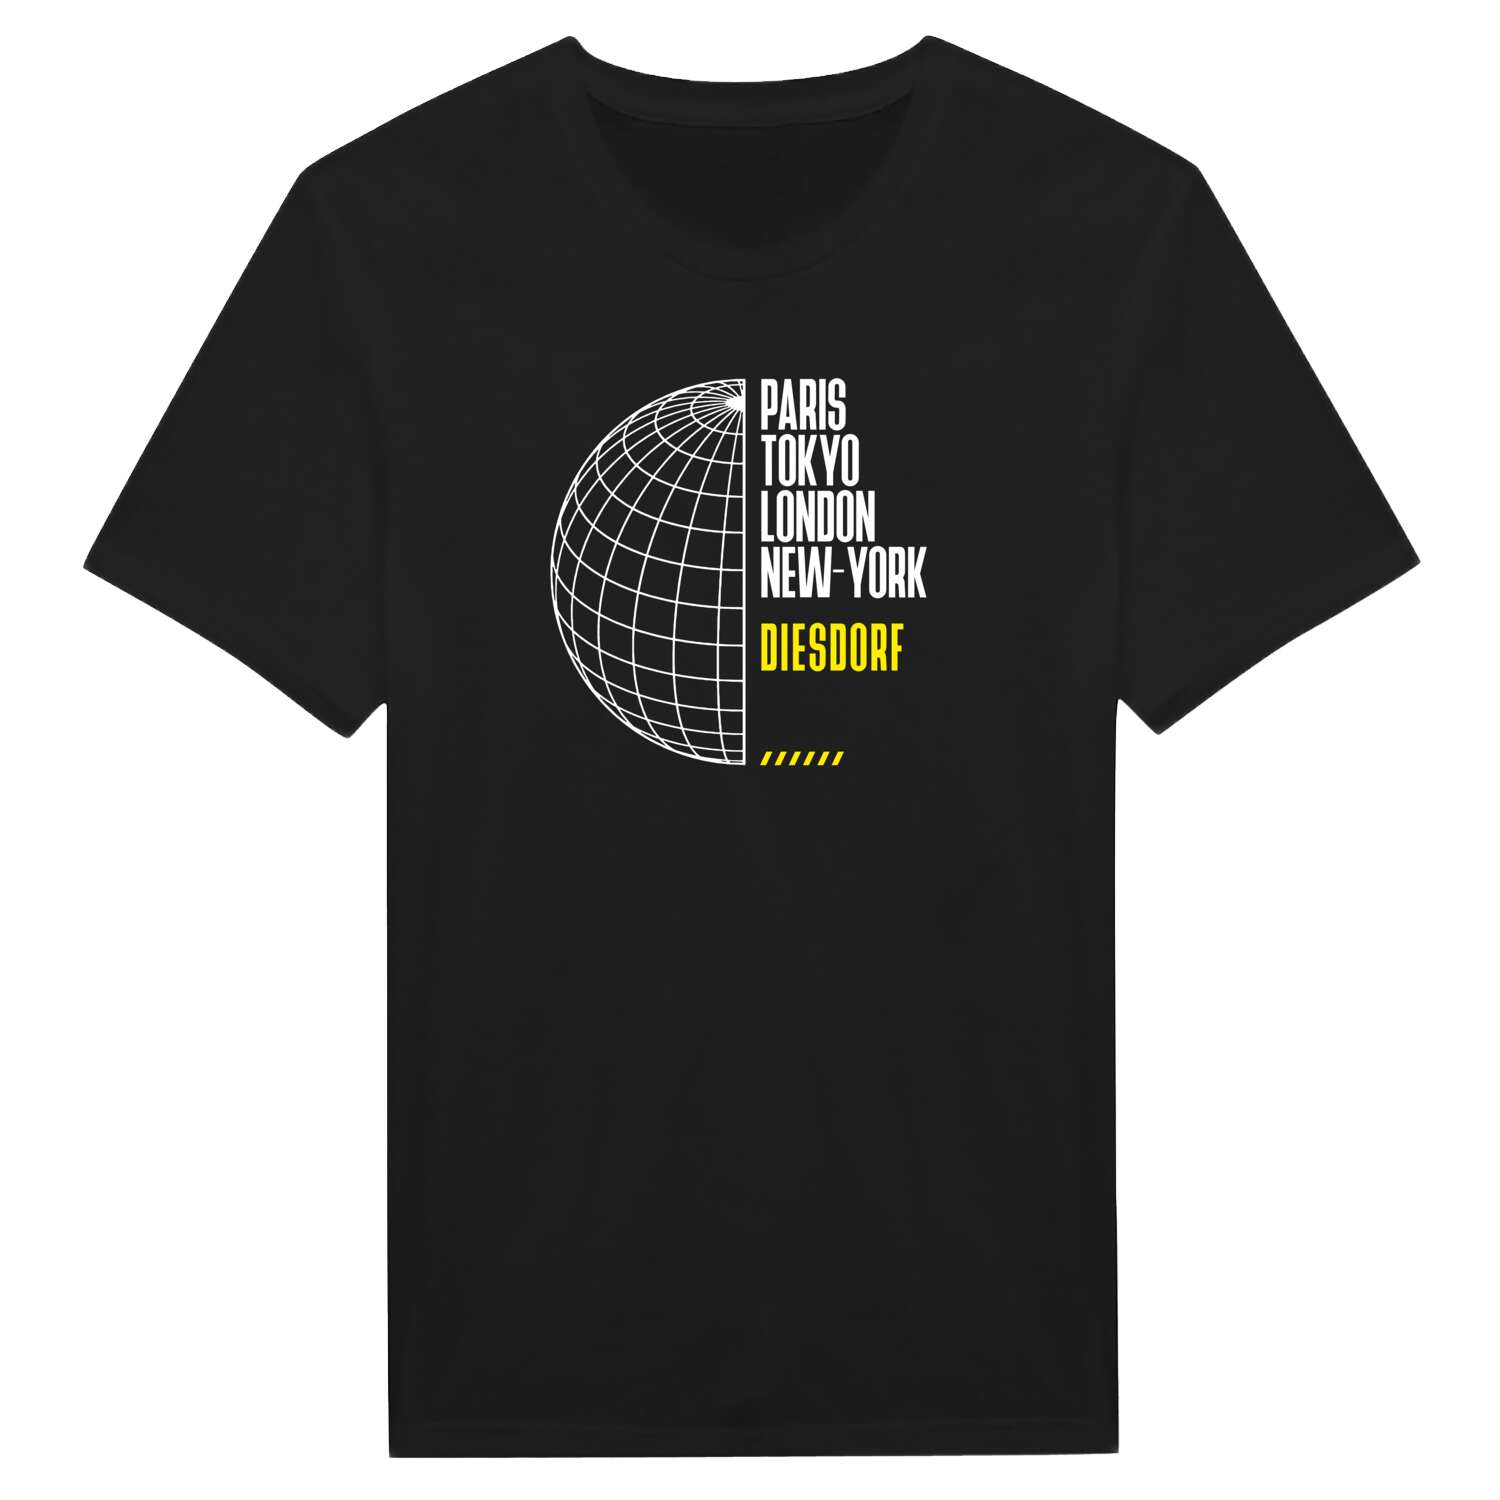 Diesdorf T-Shirt »Paris Tokyo London«